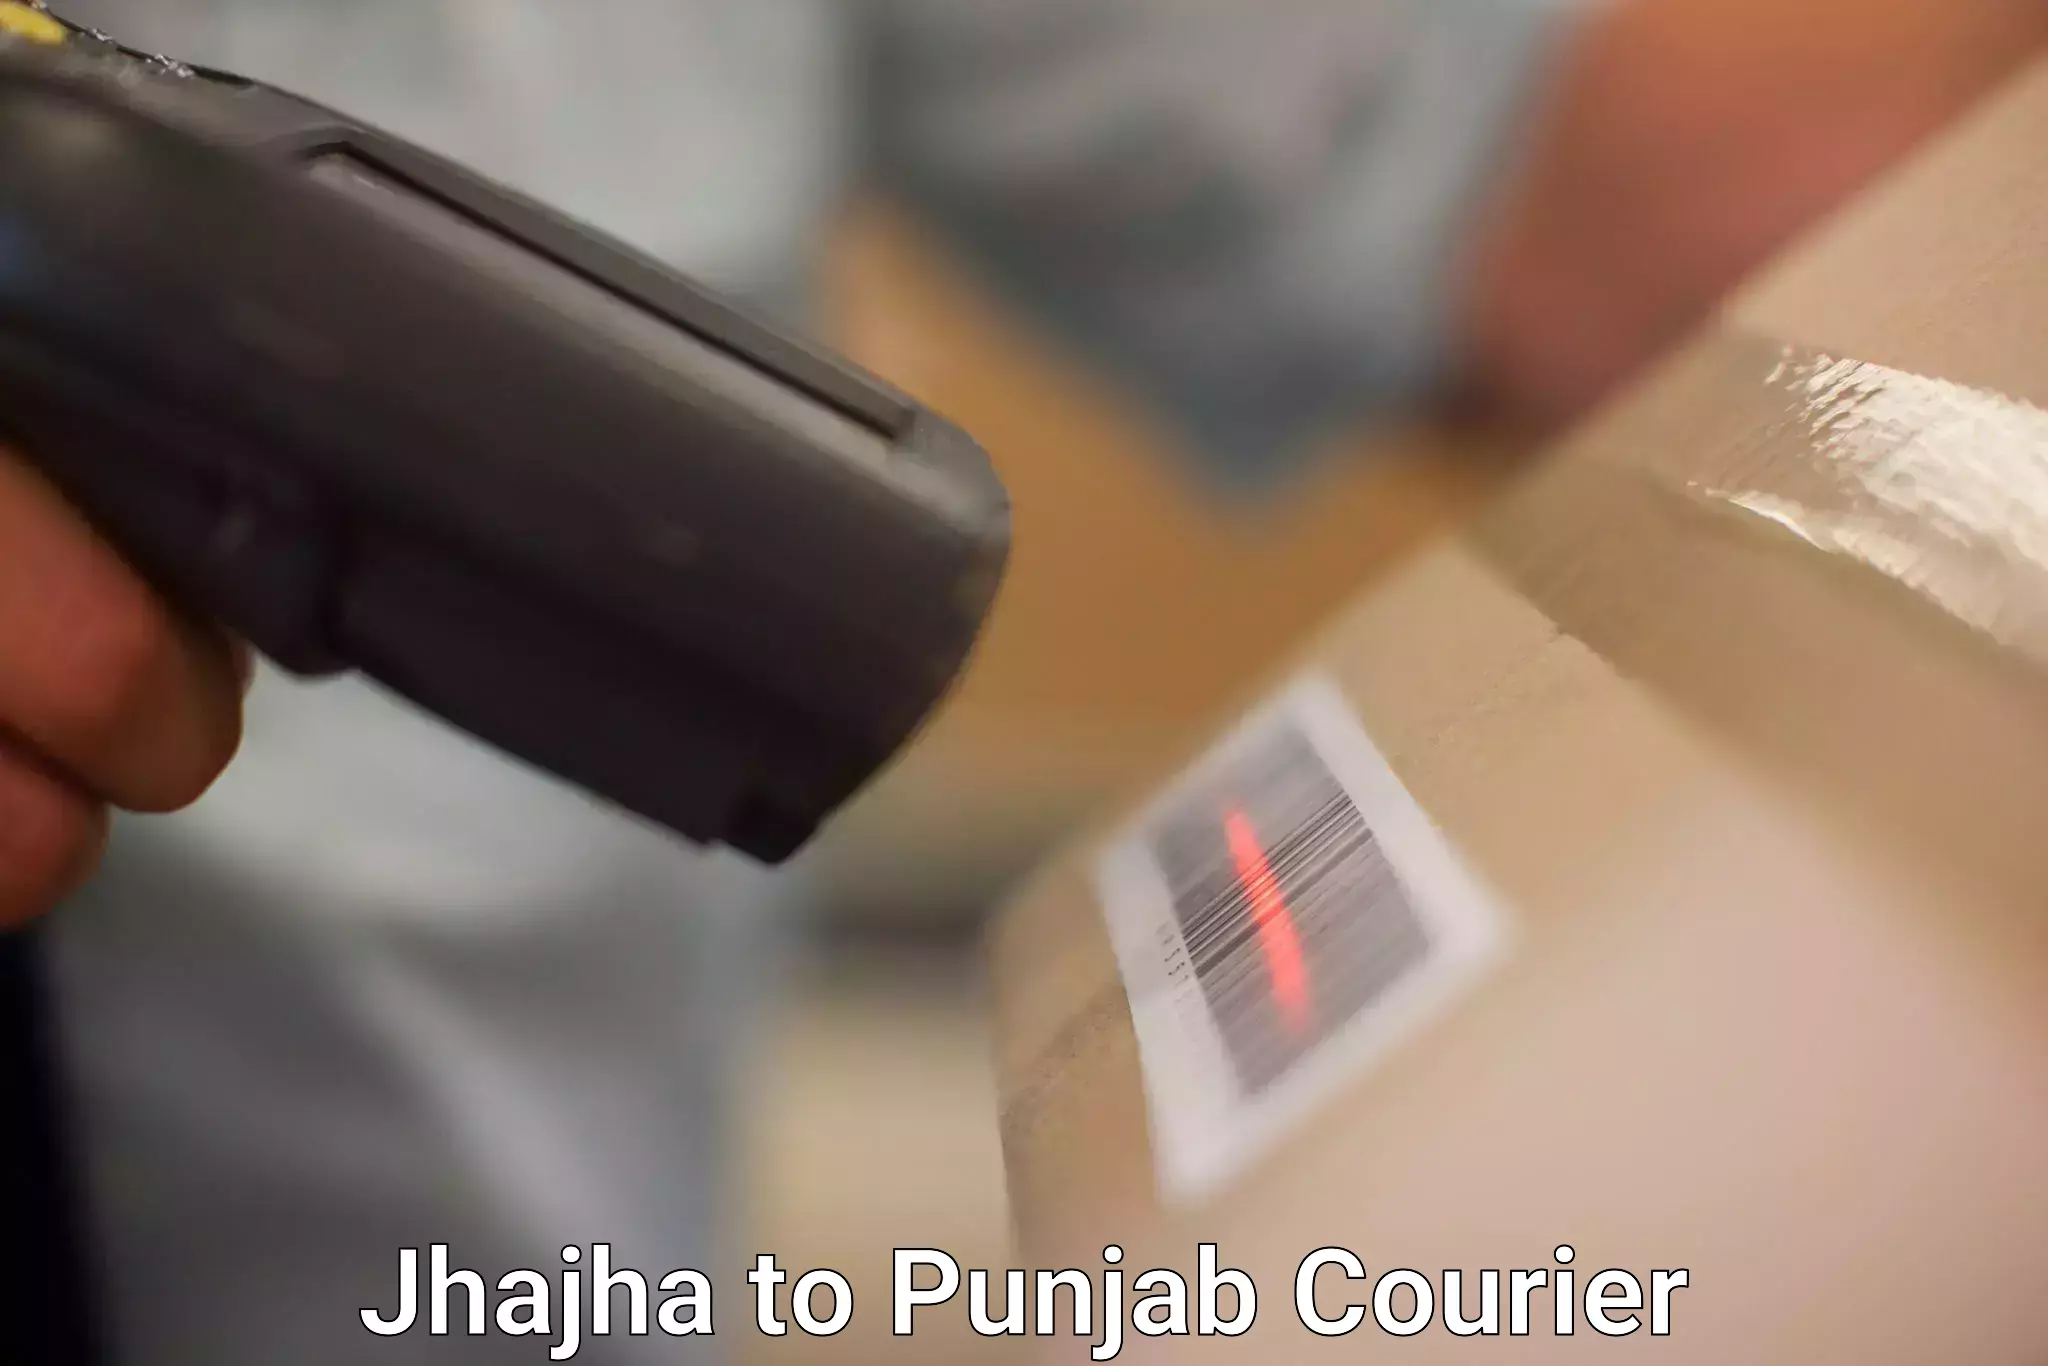 Express package handling Jhajha to Jalalabad